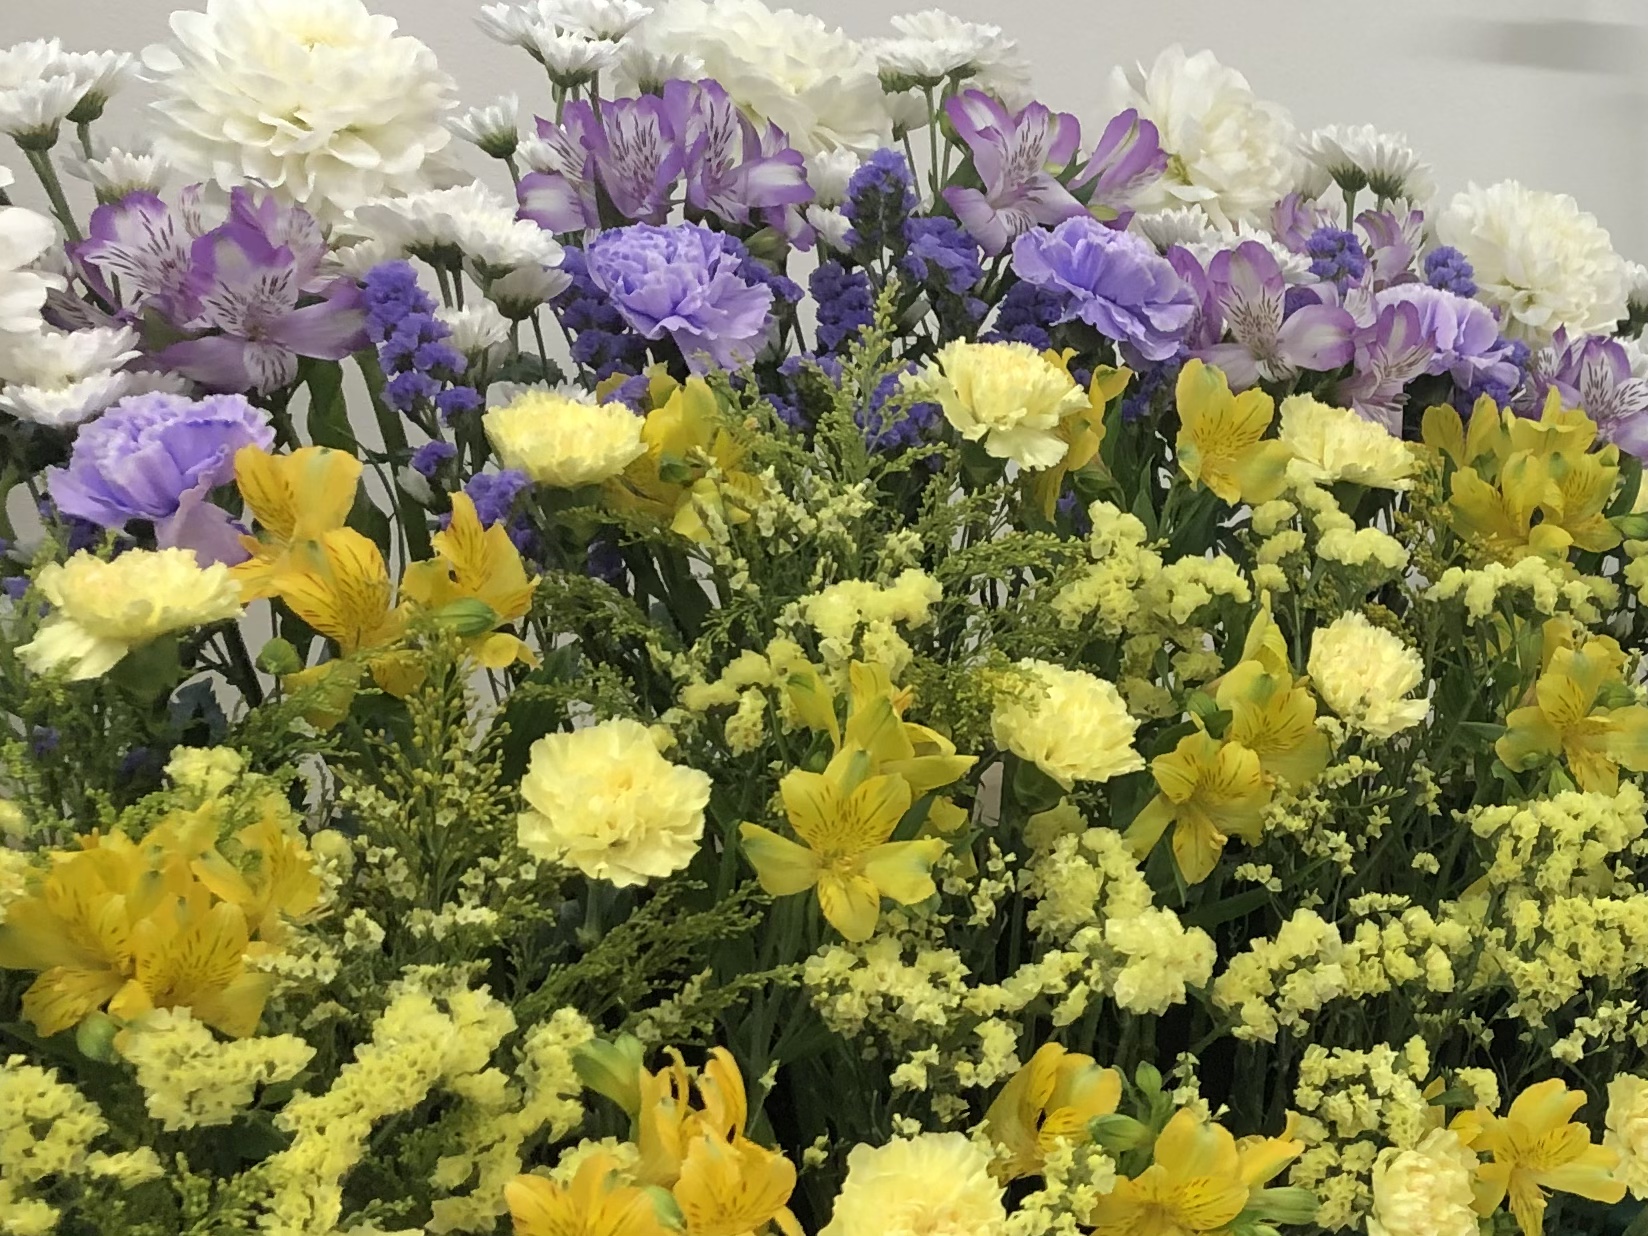 川口市民葬祭では、家族葬にピッタリの花祭壇がたくさんあり、大切な人を綺麗なお花で送ってあげたいというお気持ちにお応えしております。心残りのない葬儀にするためにも、まずはお気軽にお問い合わせください。 川口市民葬祭 0120-419-451